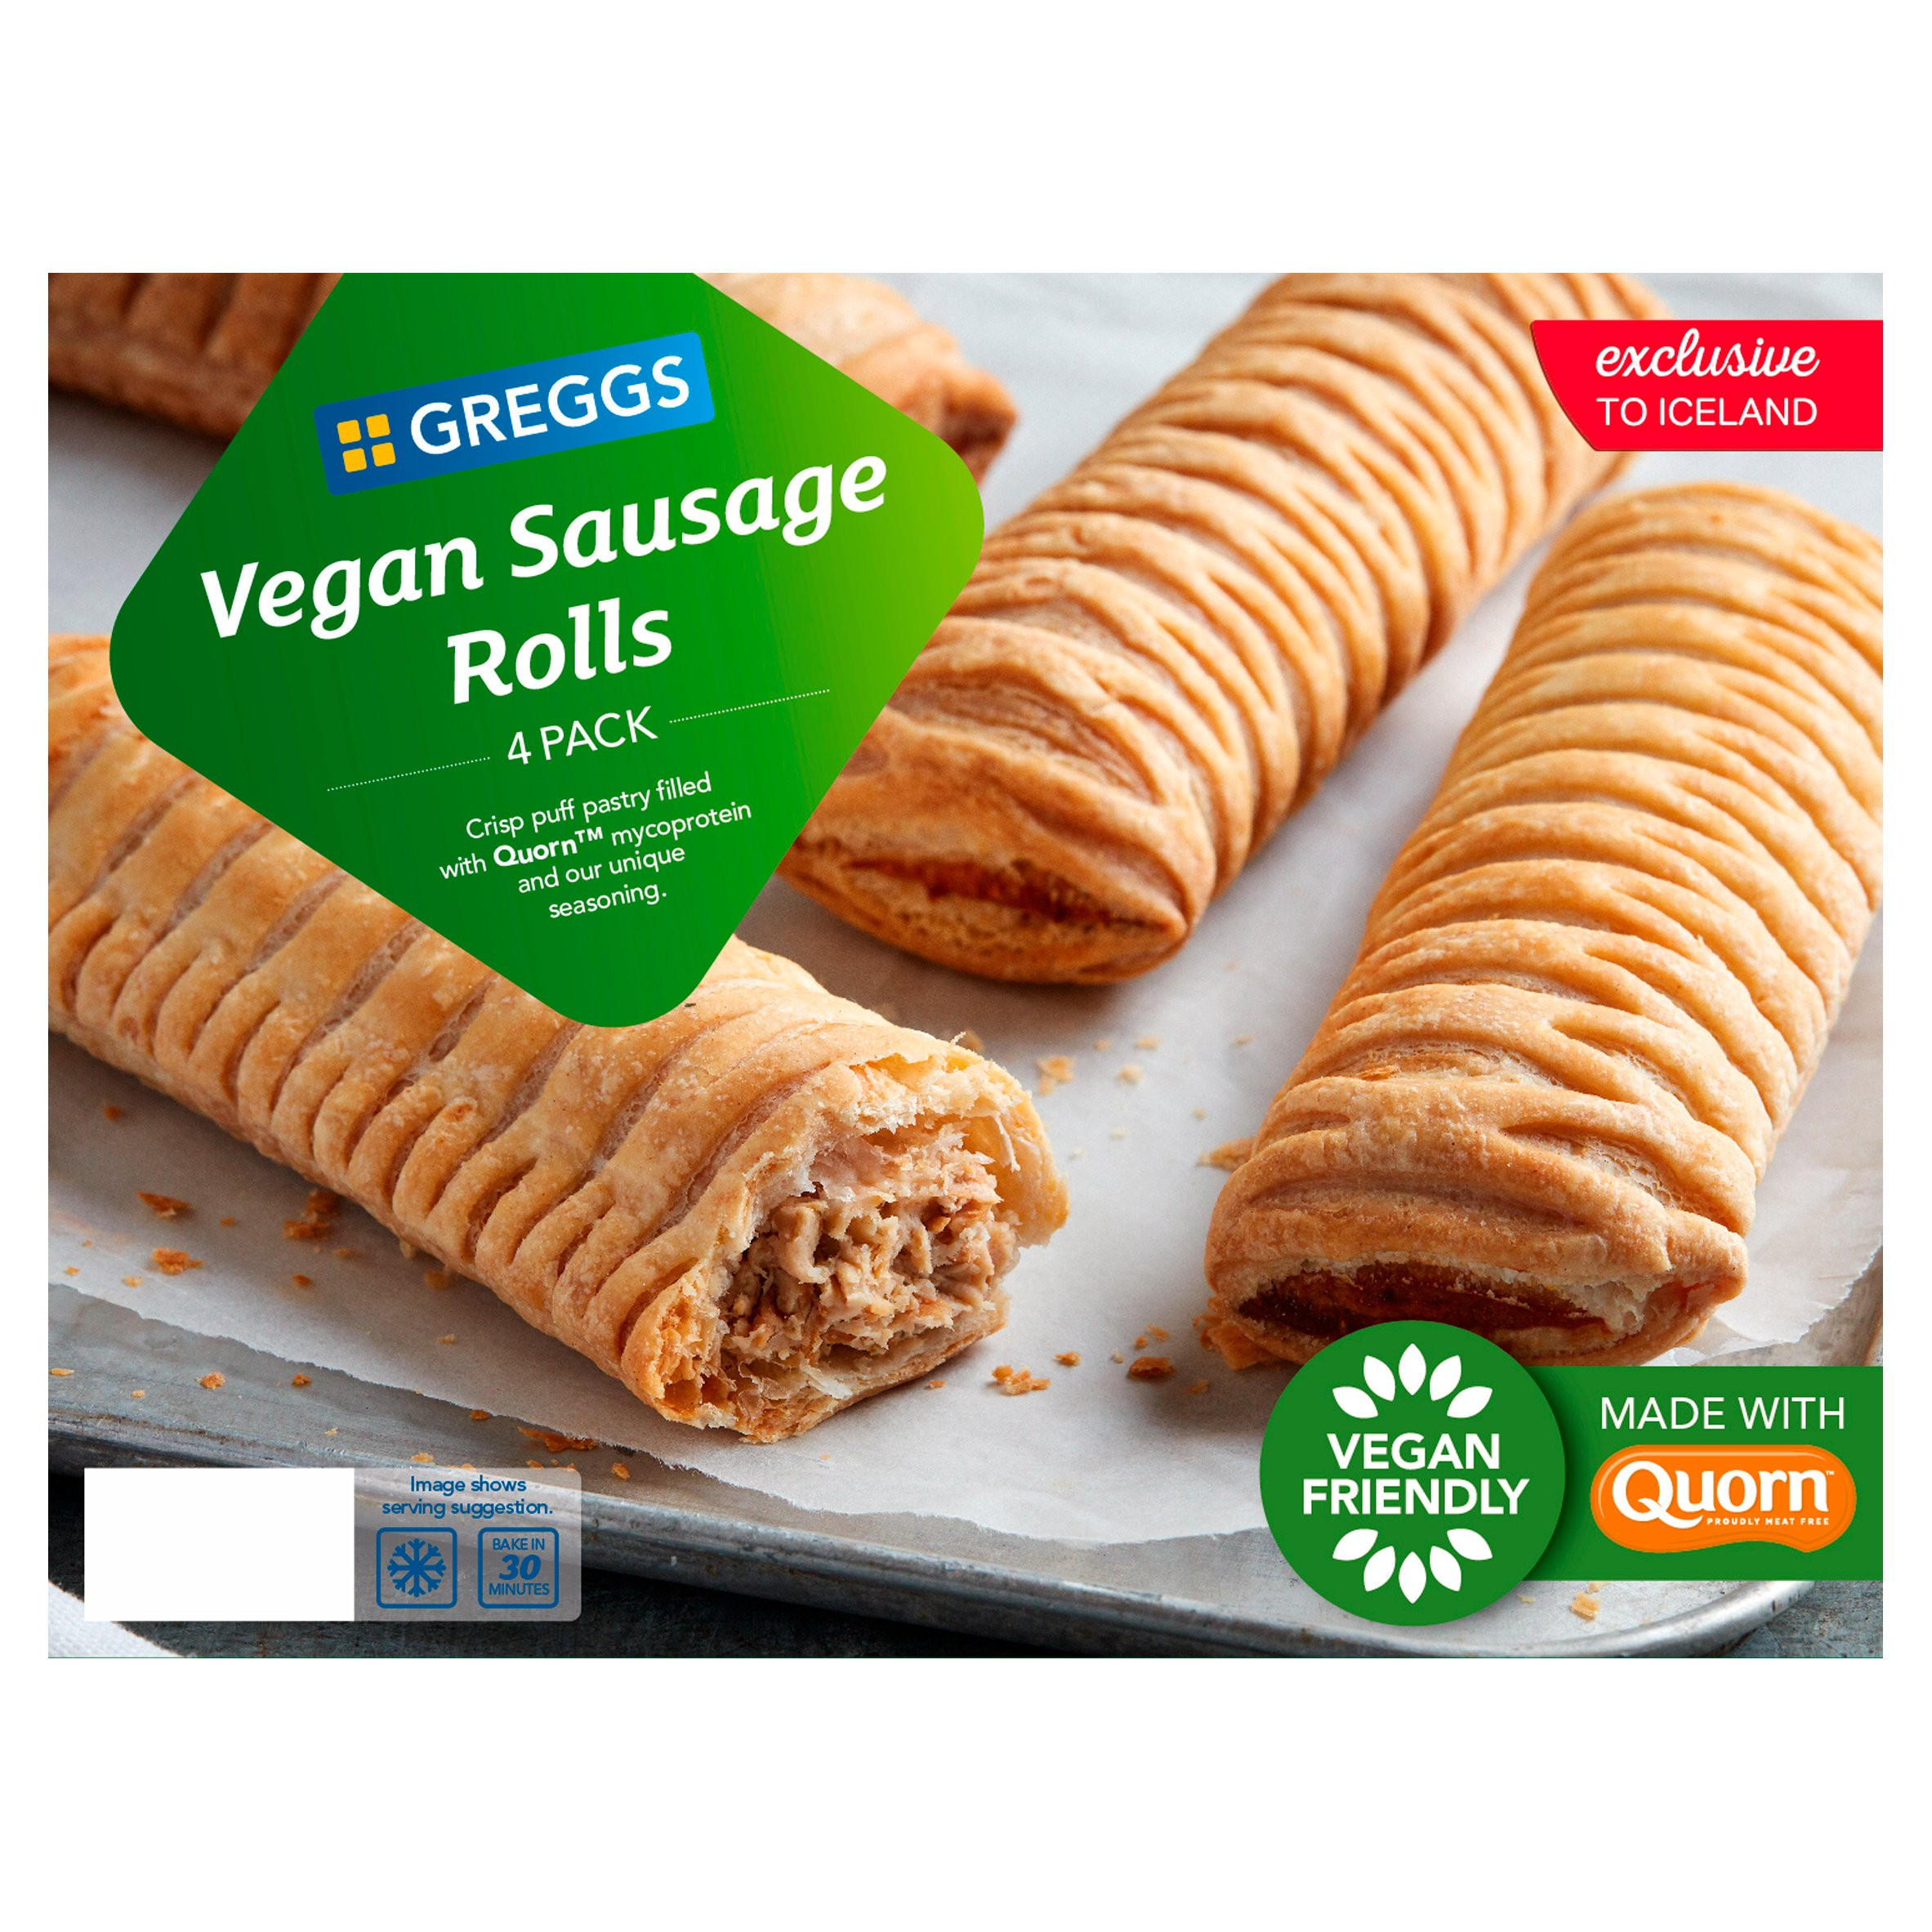 Greggs Sausage roll Recipe 